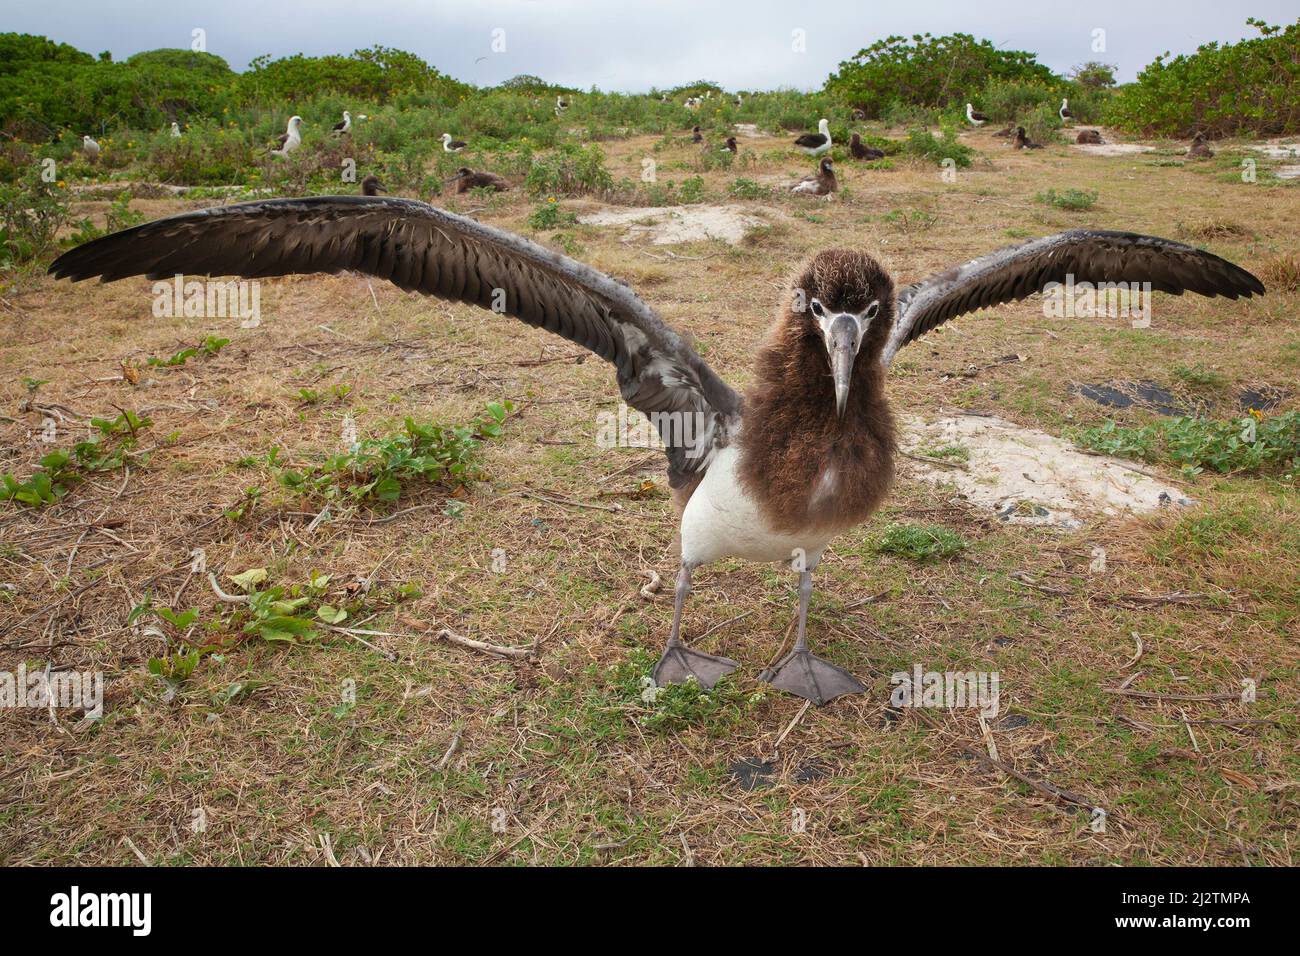 Laysan Albatross uccello volante in una colonia nidificante che si diffonde e scappando le ali, esercitando i muscoli di volo prima di imparare a volare. Foto Stock